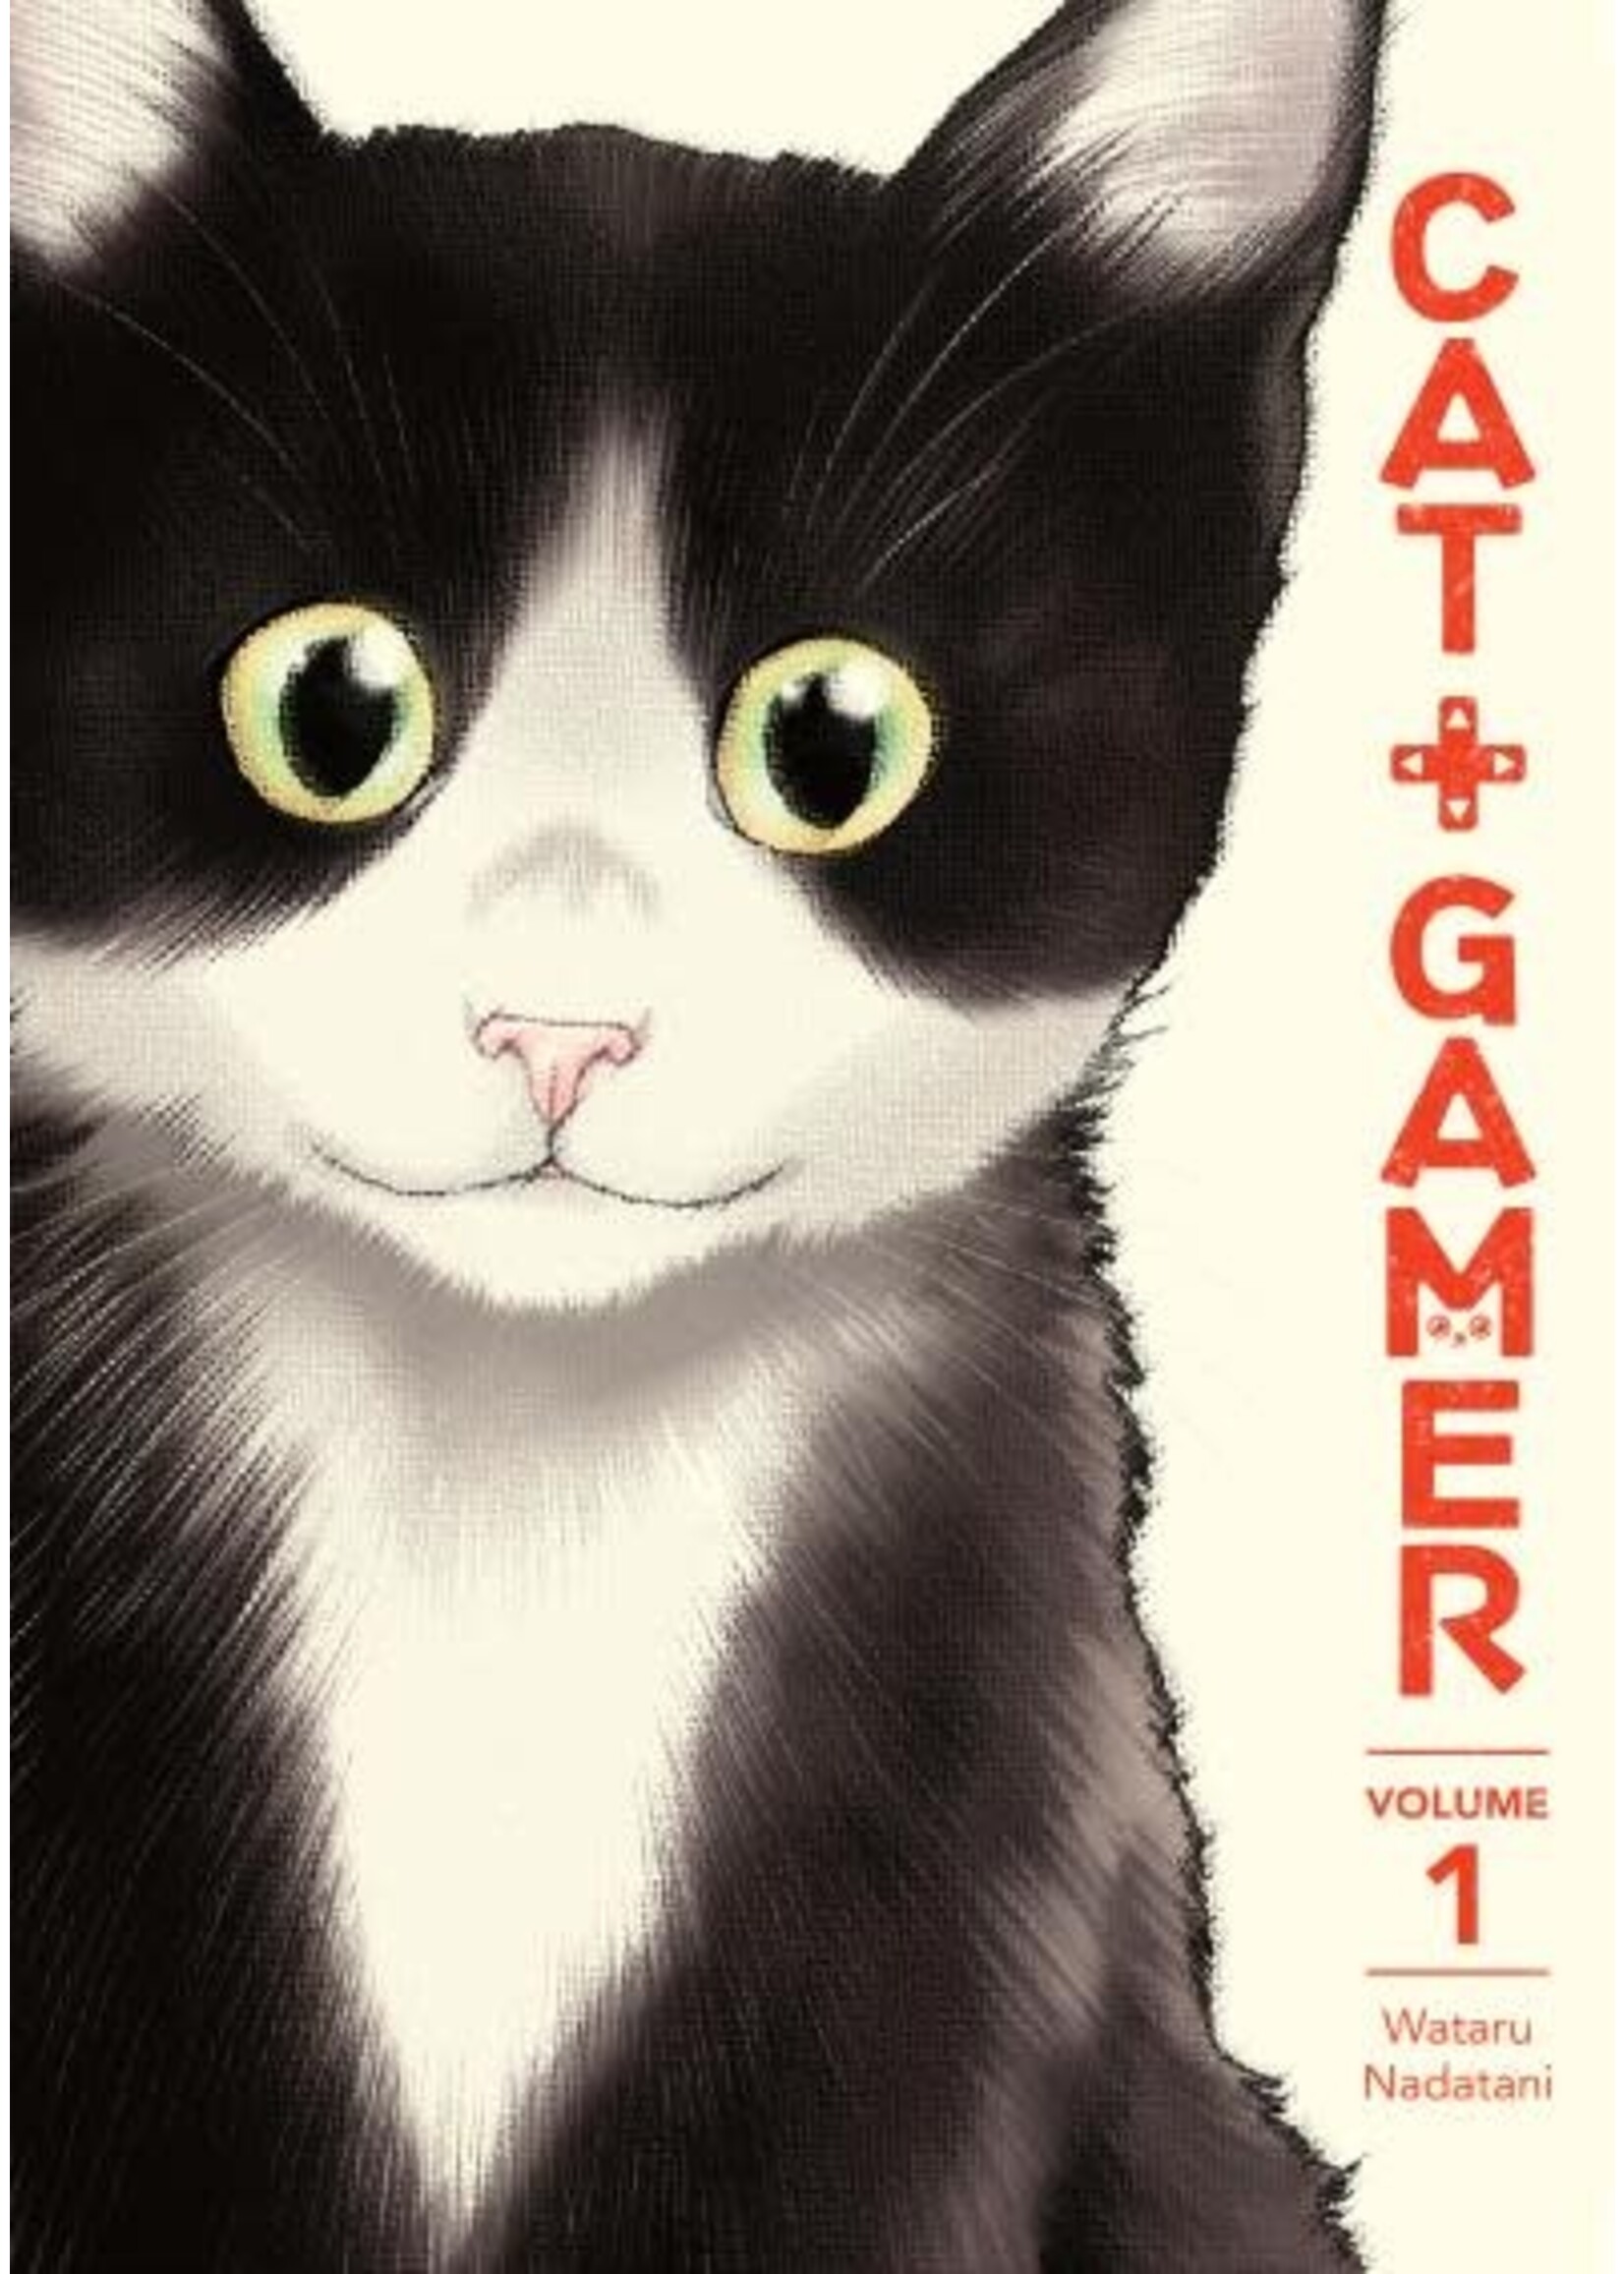 Cat + Gamer, Vol. 1, by Wataru Nadatani